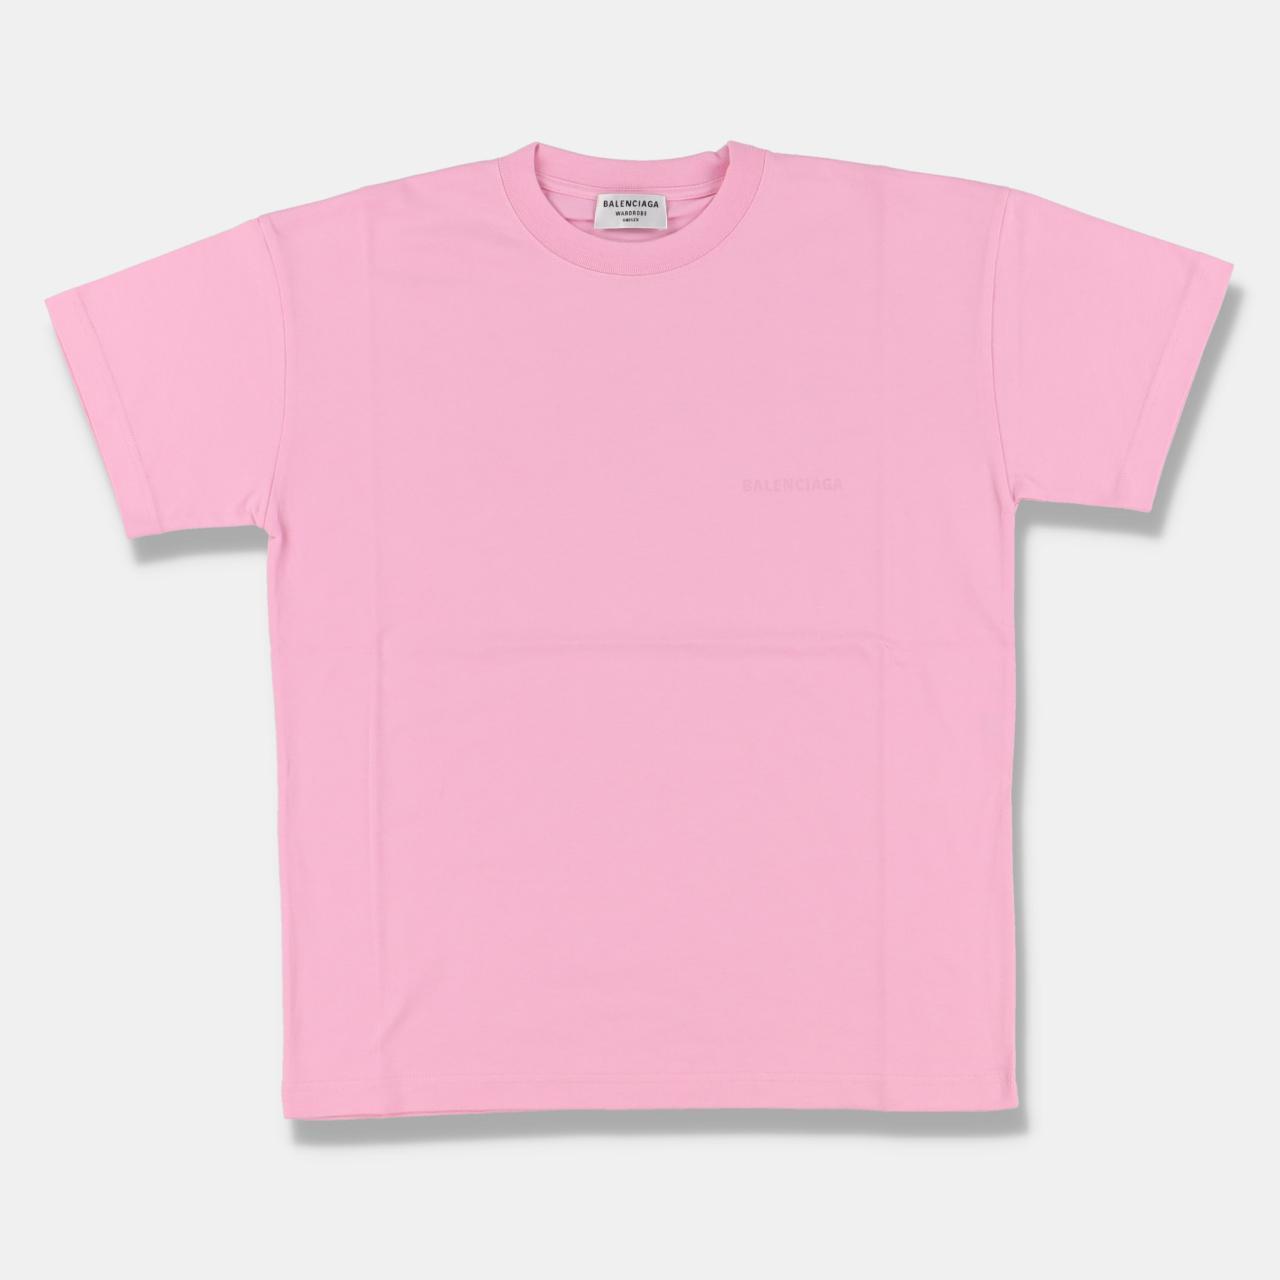 Product Image 2 - Balenciaga Pink Logo Print T-Shirt

-Size